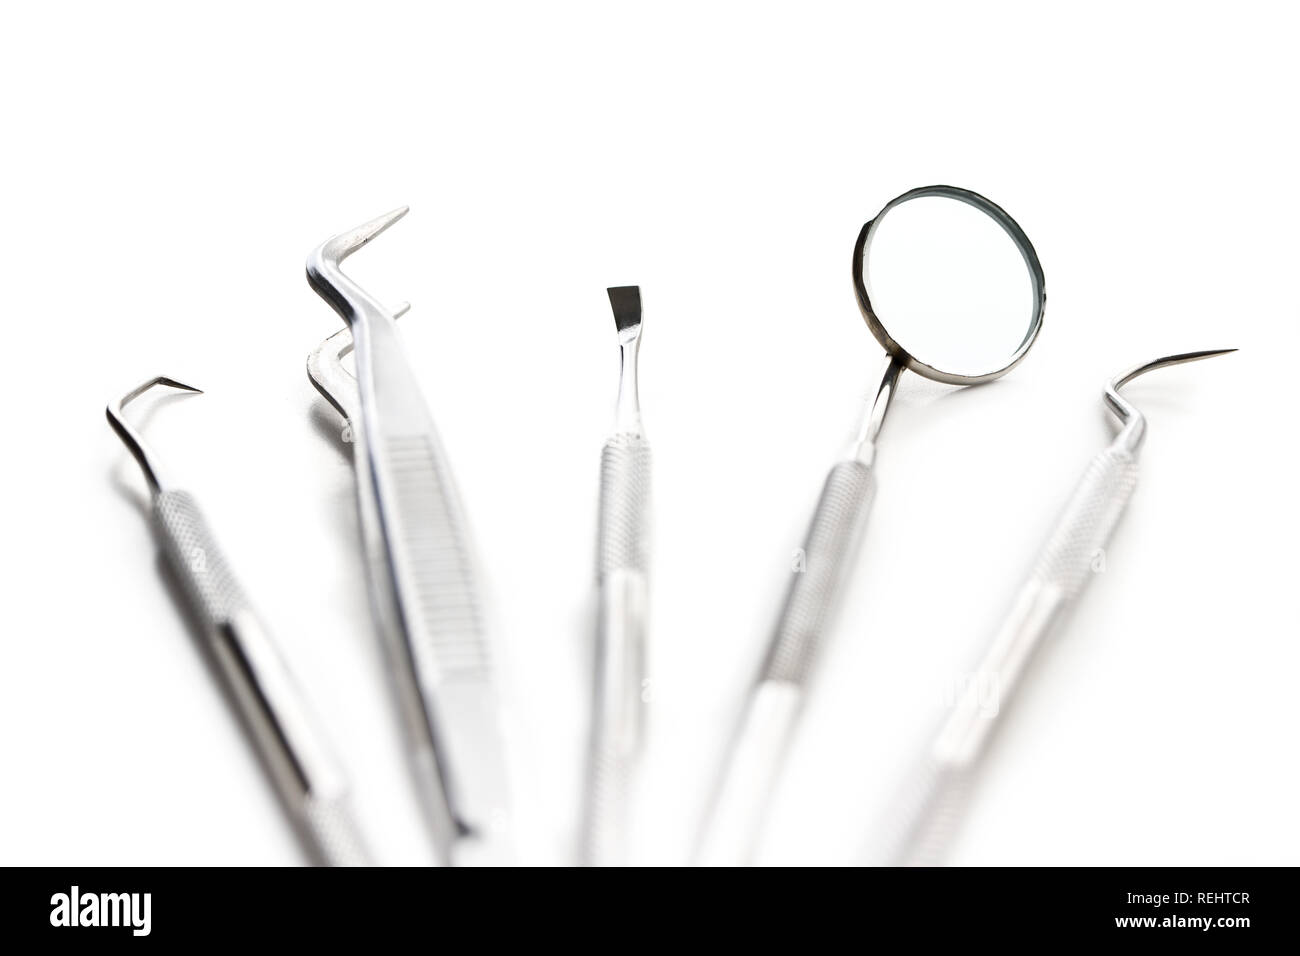 Strumenti odontoiatrici. Dentisti strumenti isolati su sfondo bianco. Foto Stock